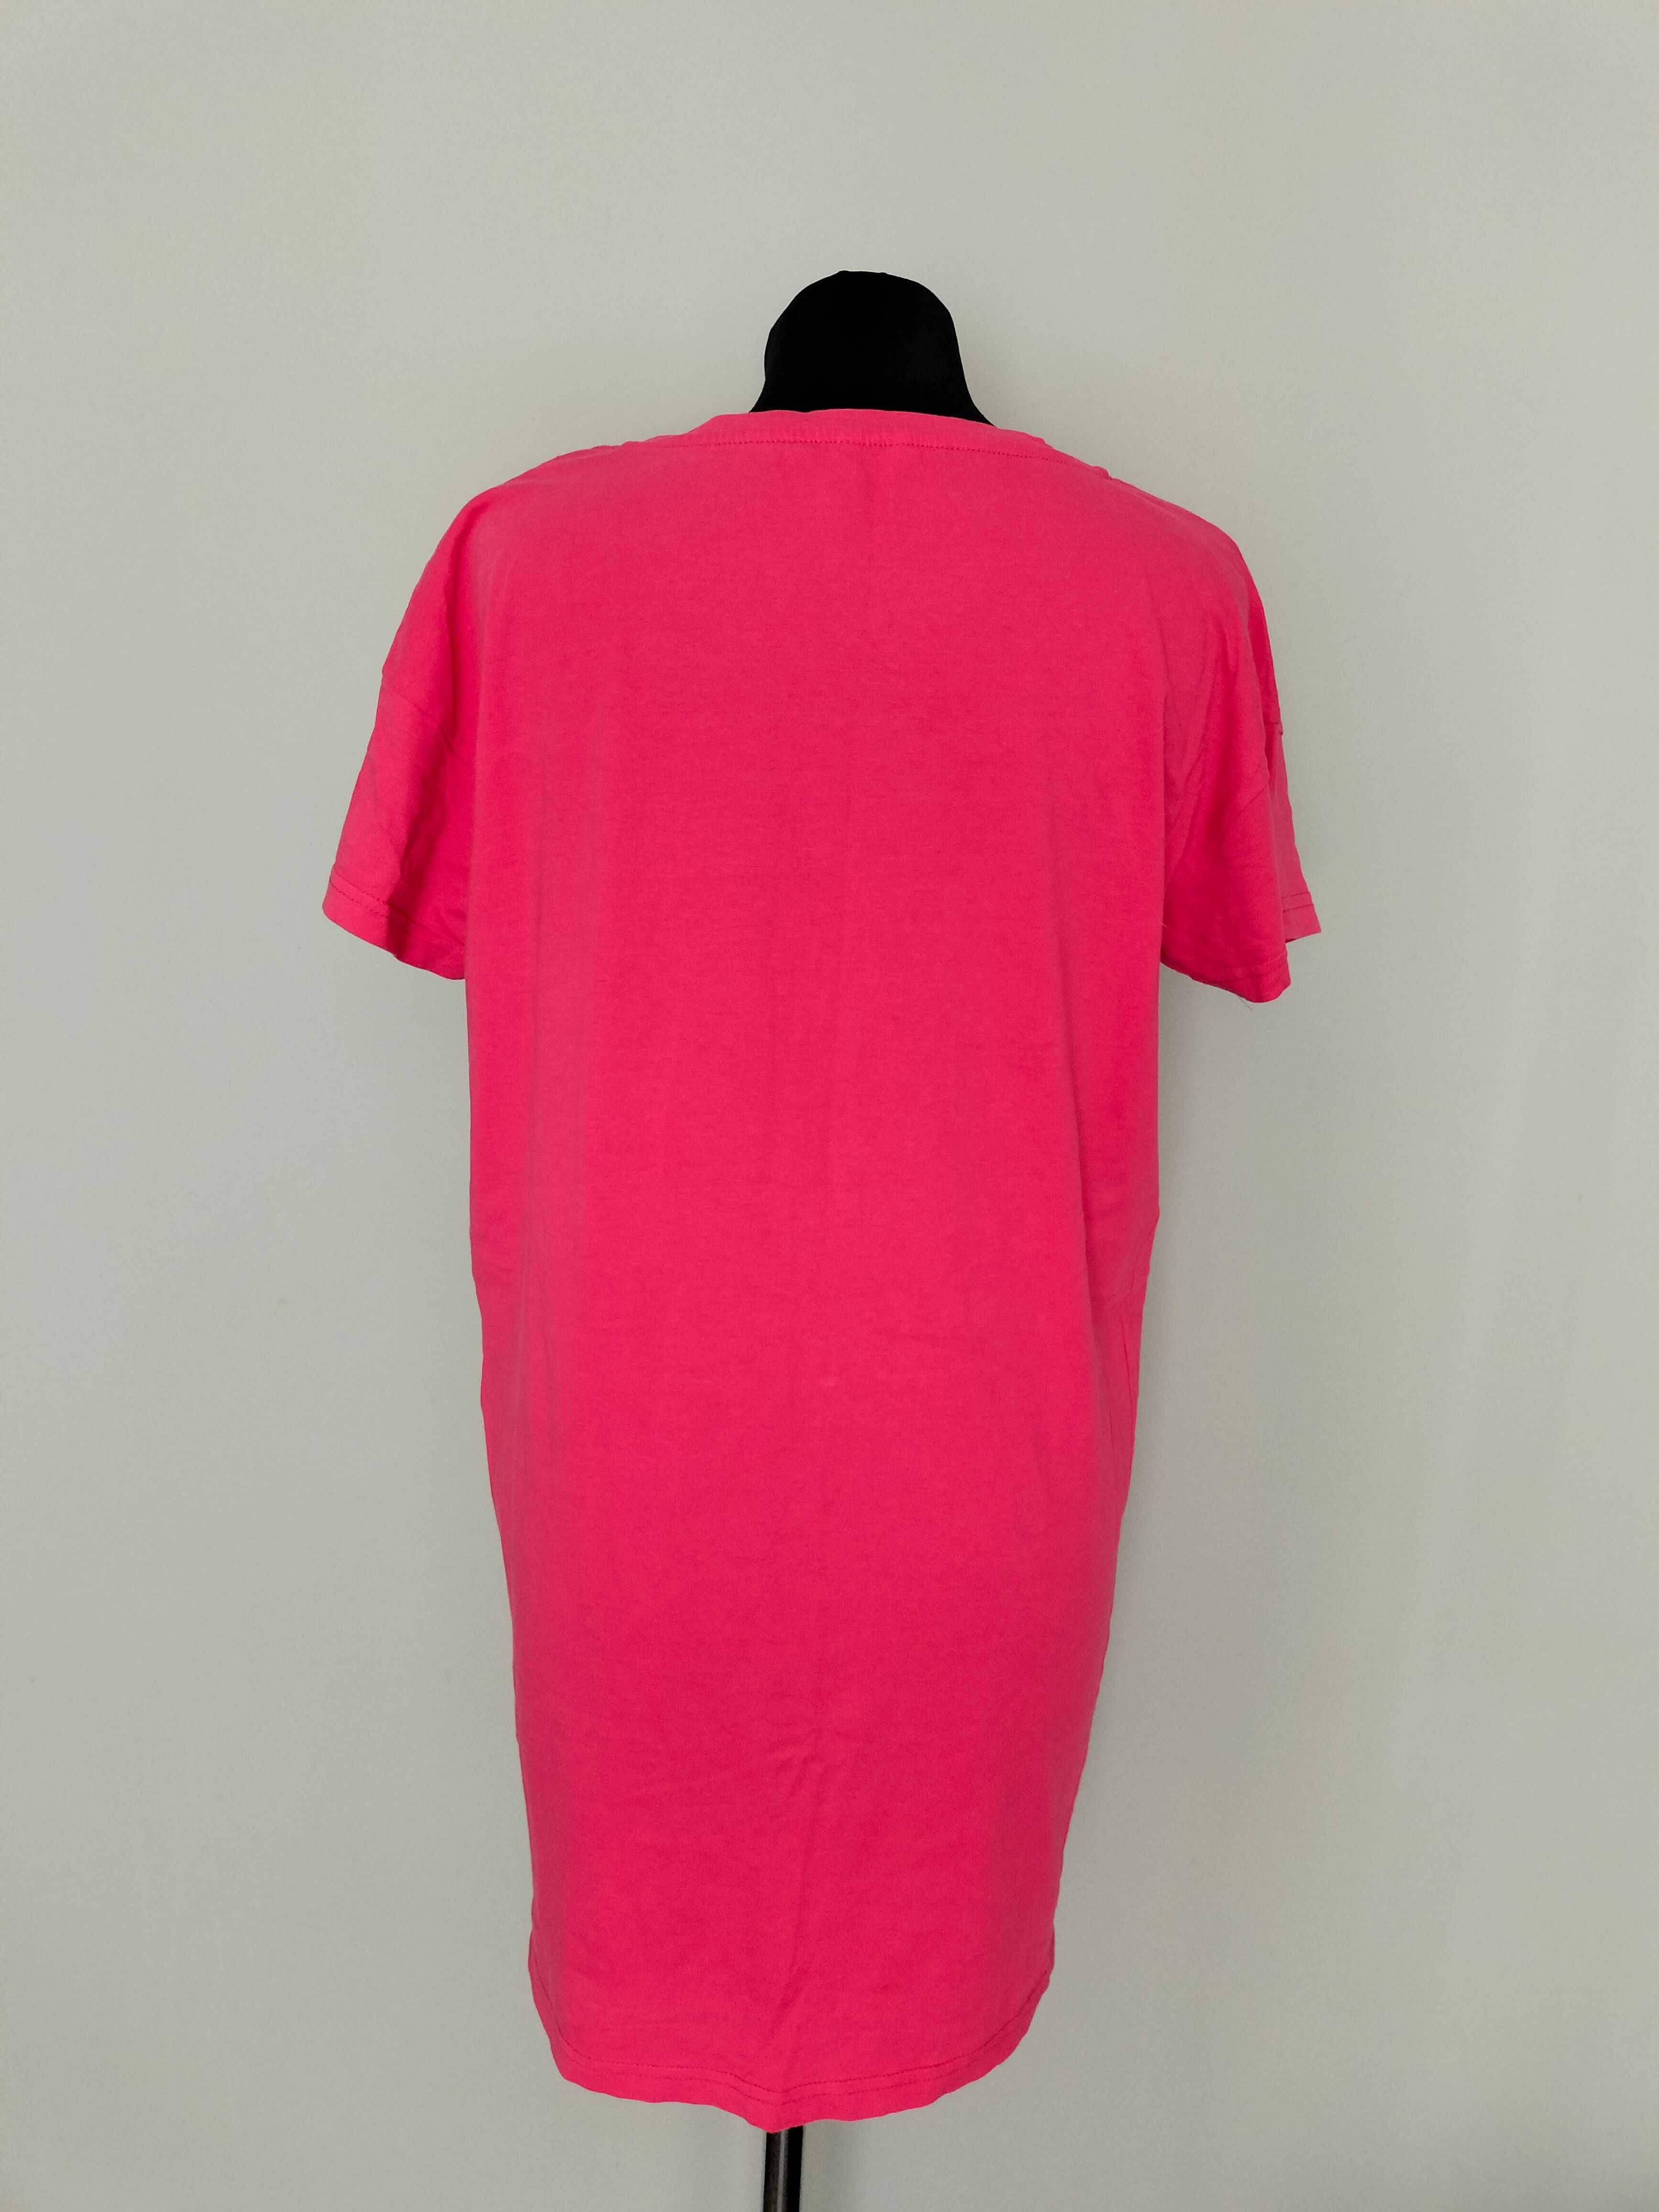 Koszula nocna piżama różowa malinowa z napisem LOVE r.M/L